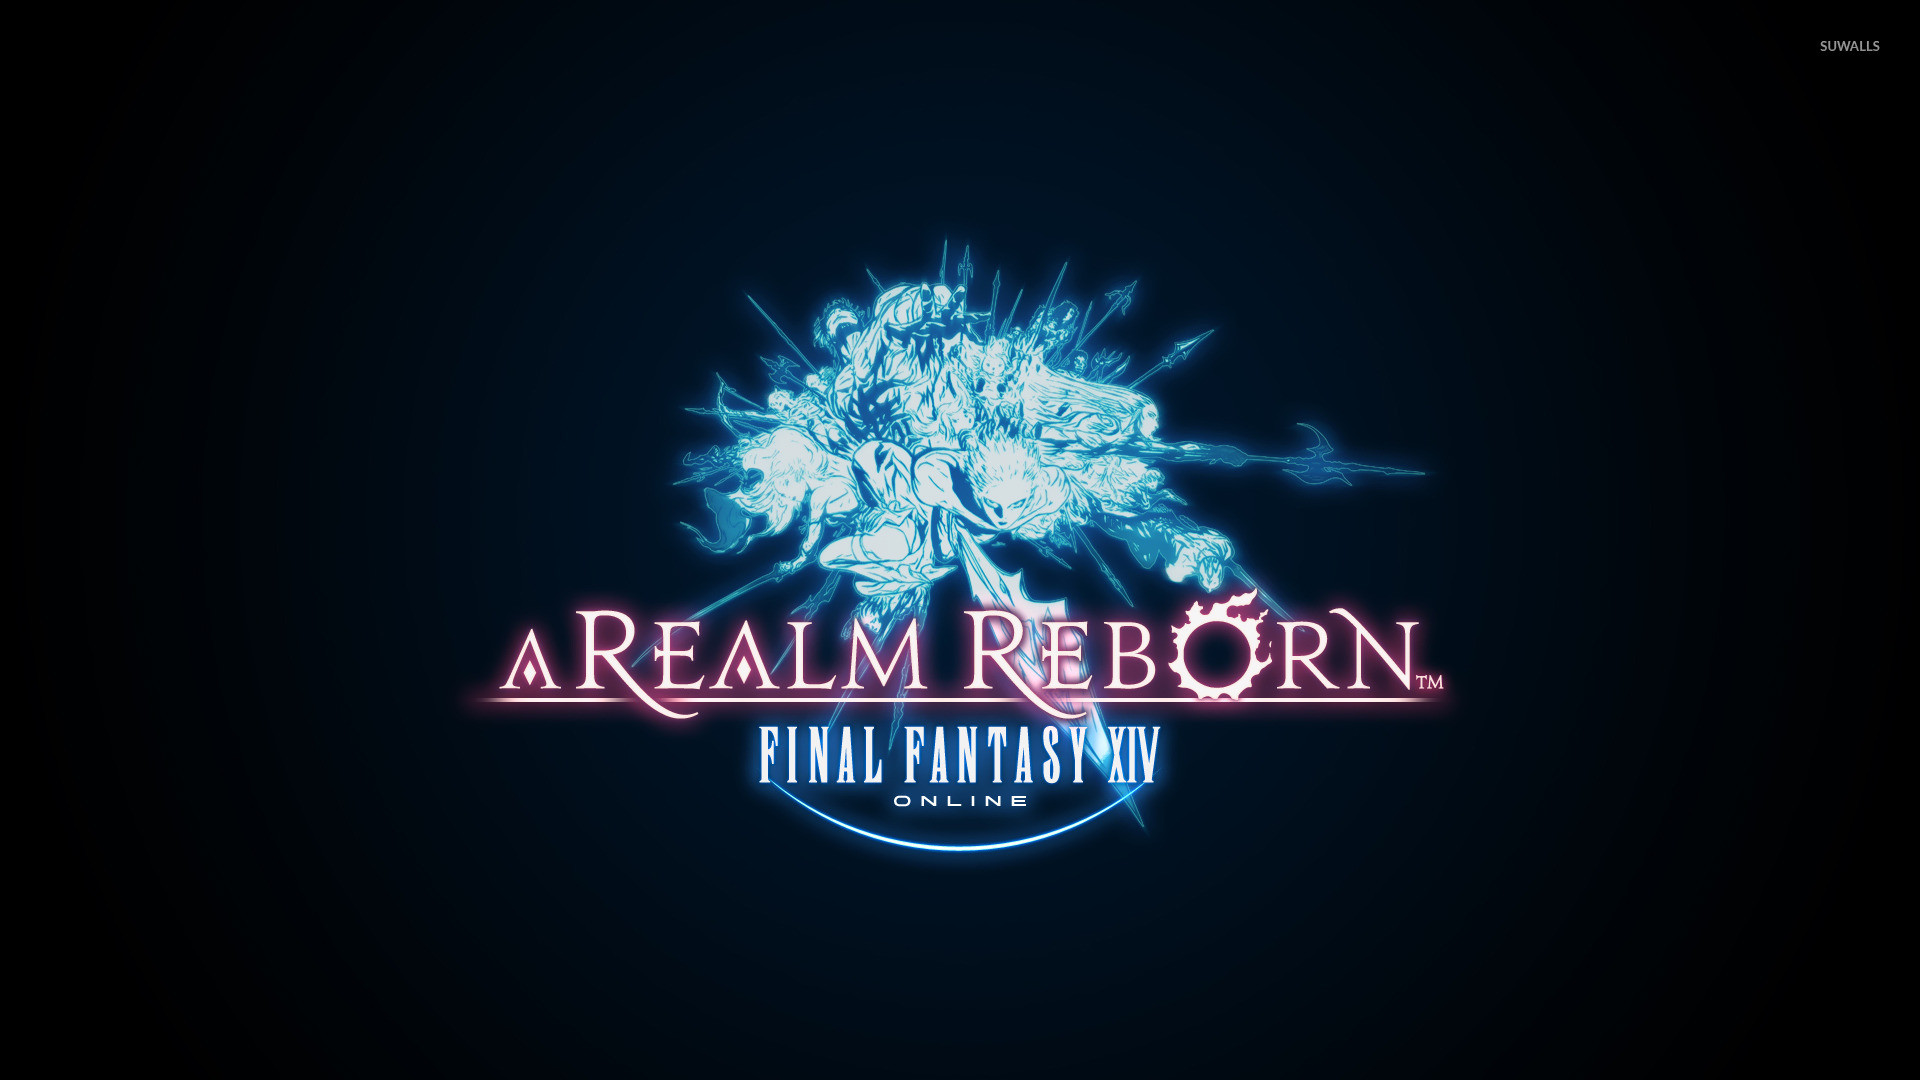 1920x1080 Final Fantasy XIV: A Realm Reborn wallpaper